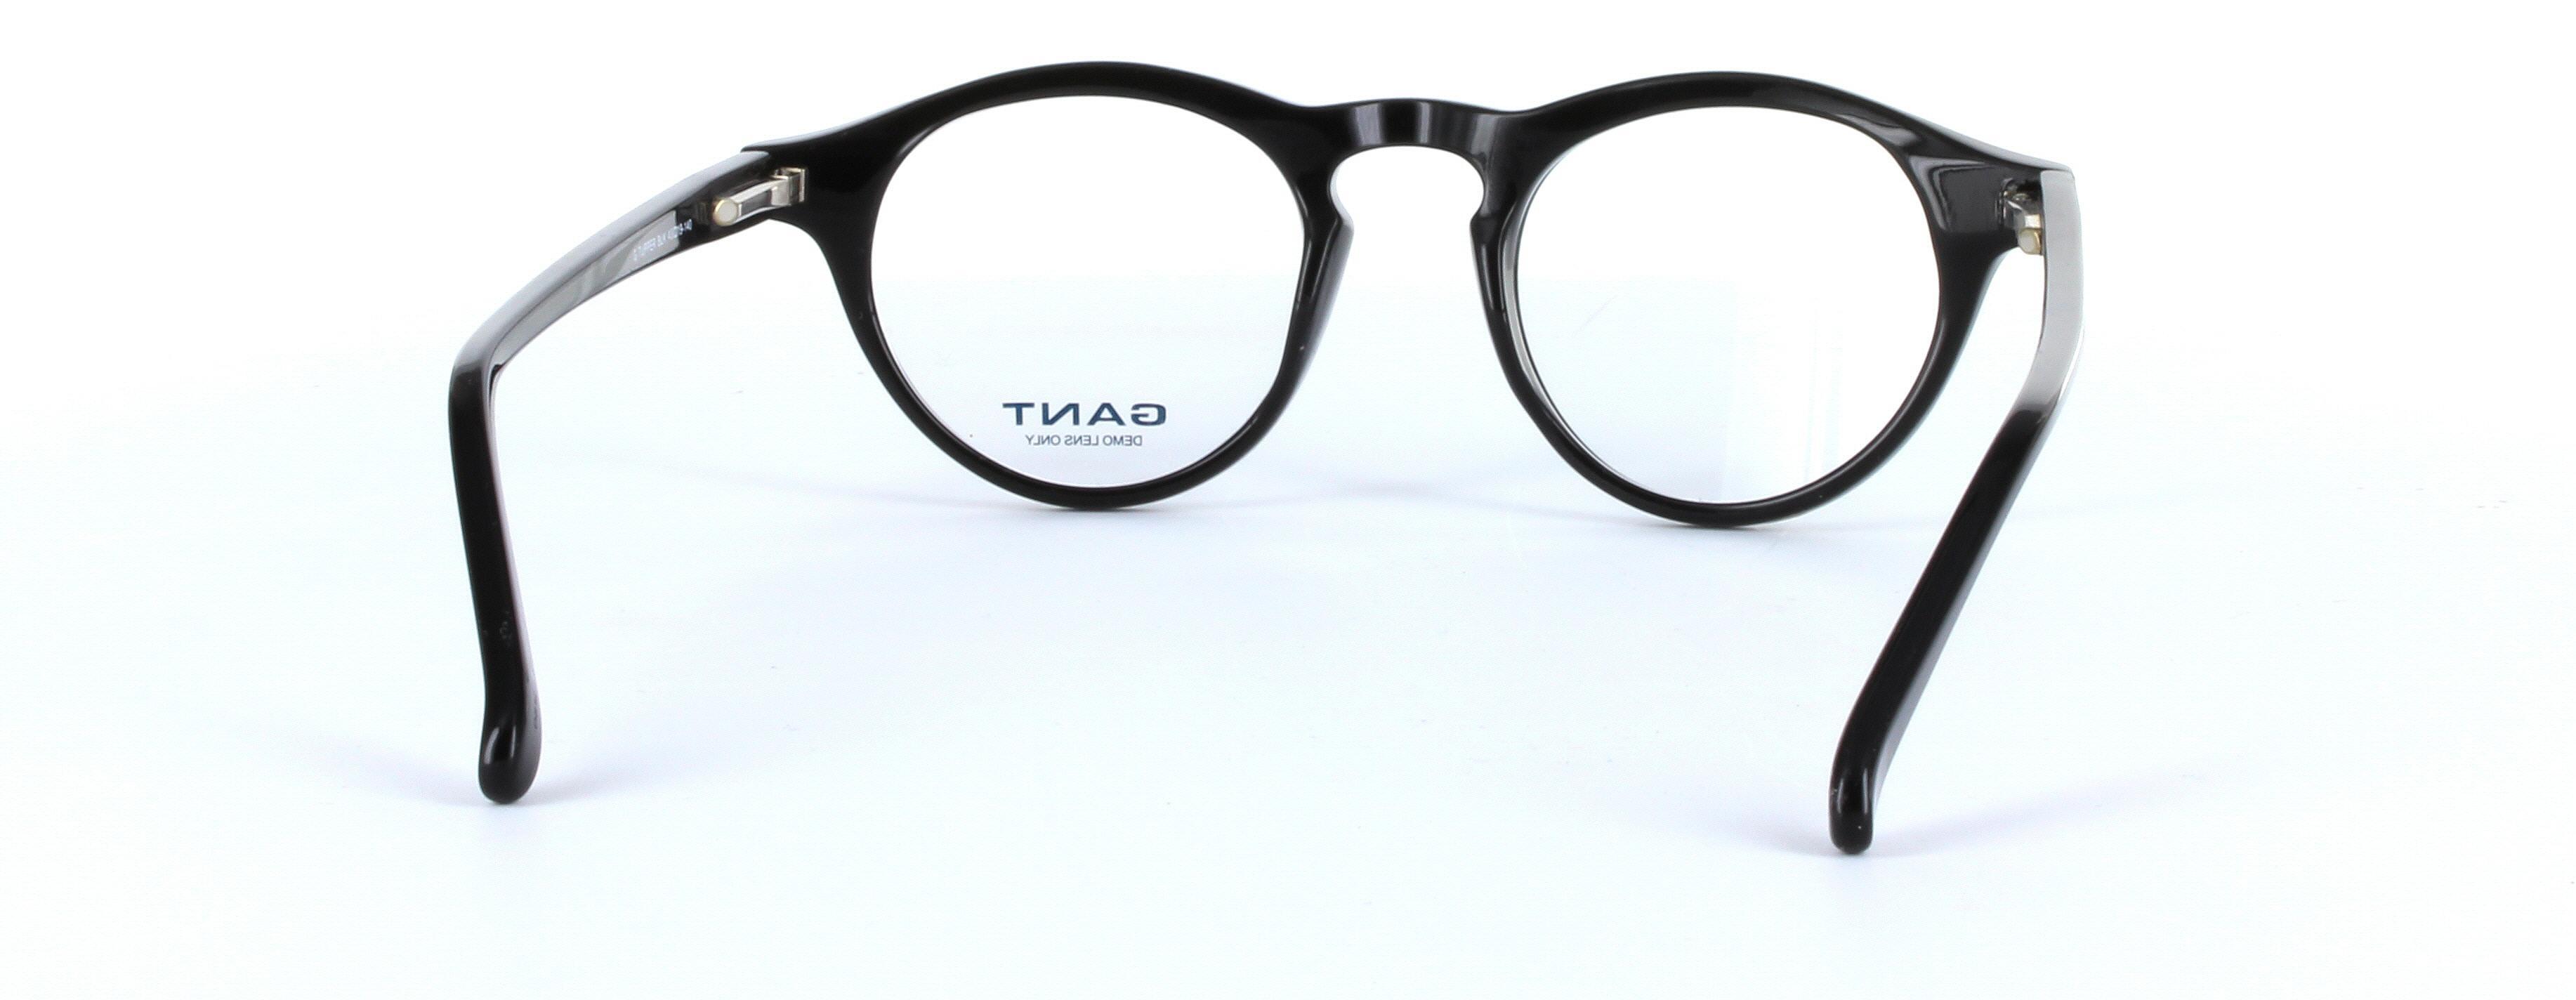 GANT TUPPER Black Full Rim Round Acetate Glasses - Image View 3